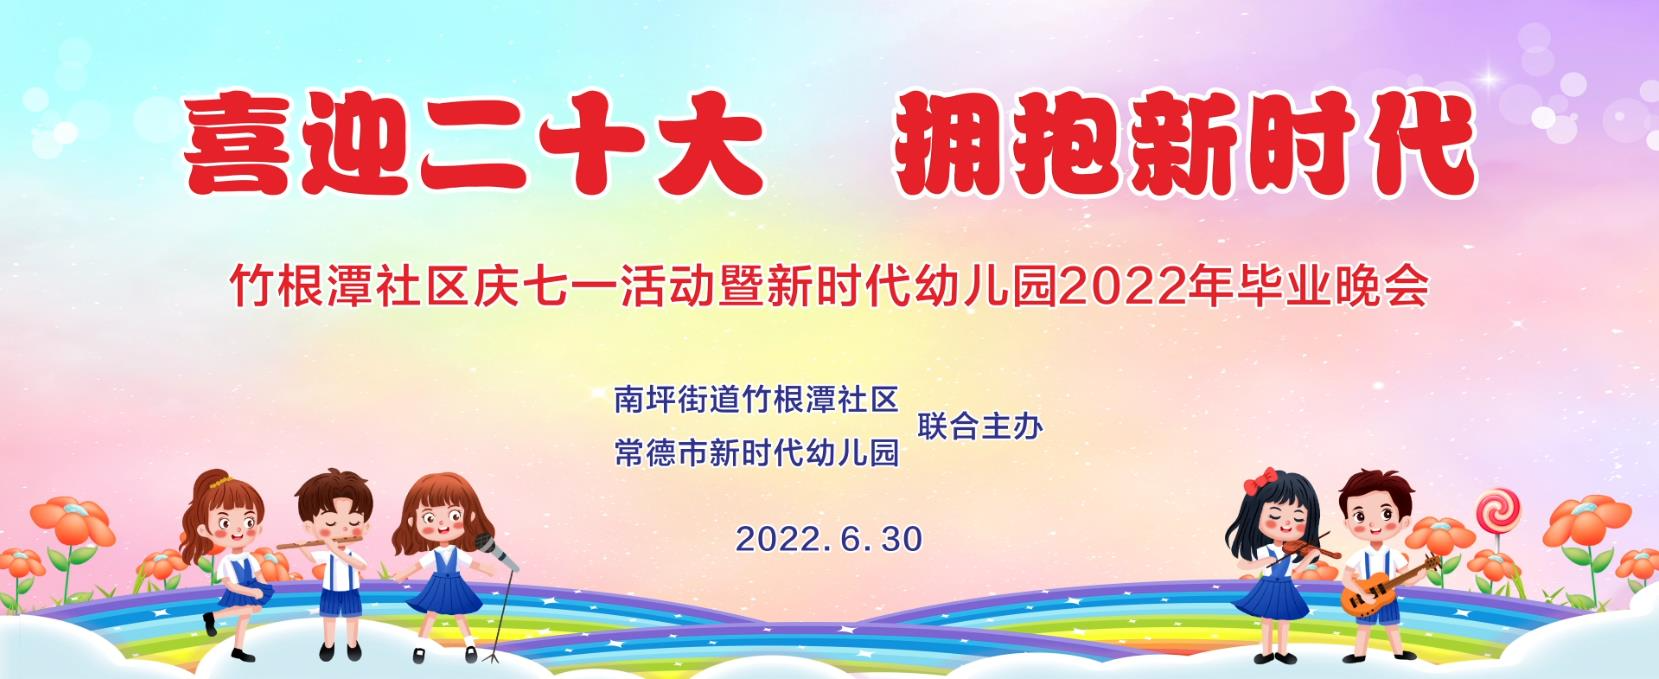 鼎城区新时代幼儿园2022年毕业晚会